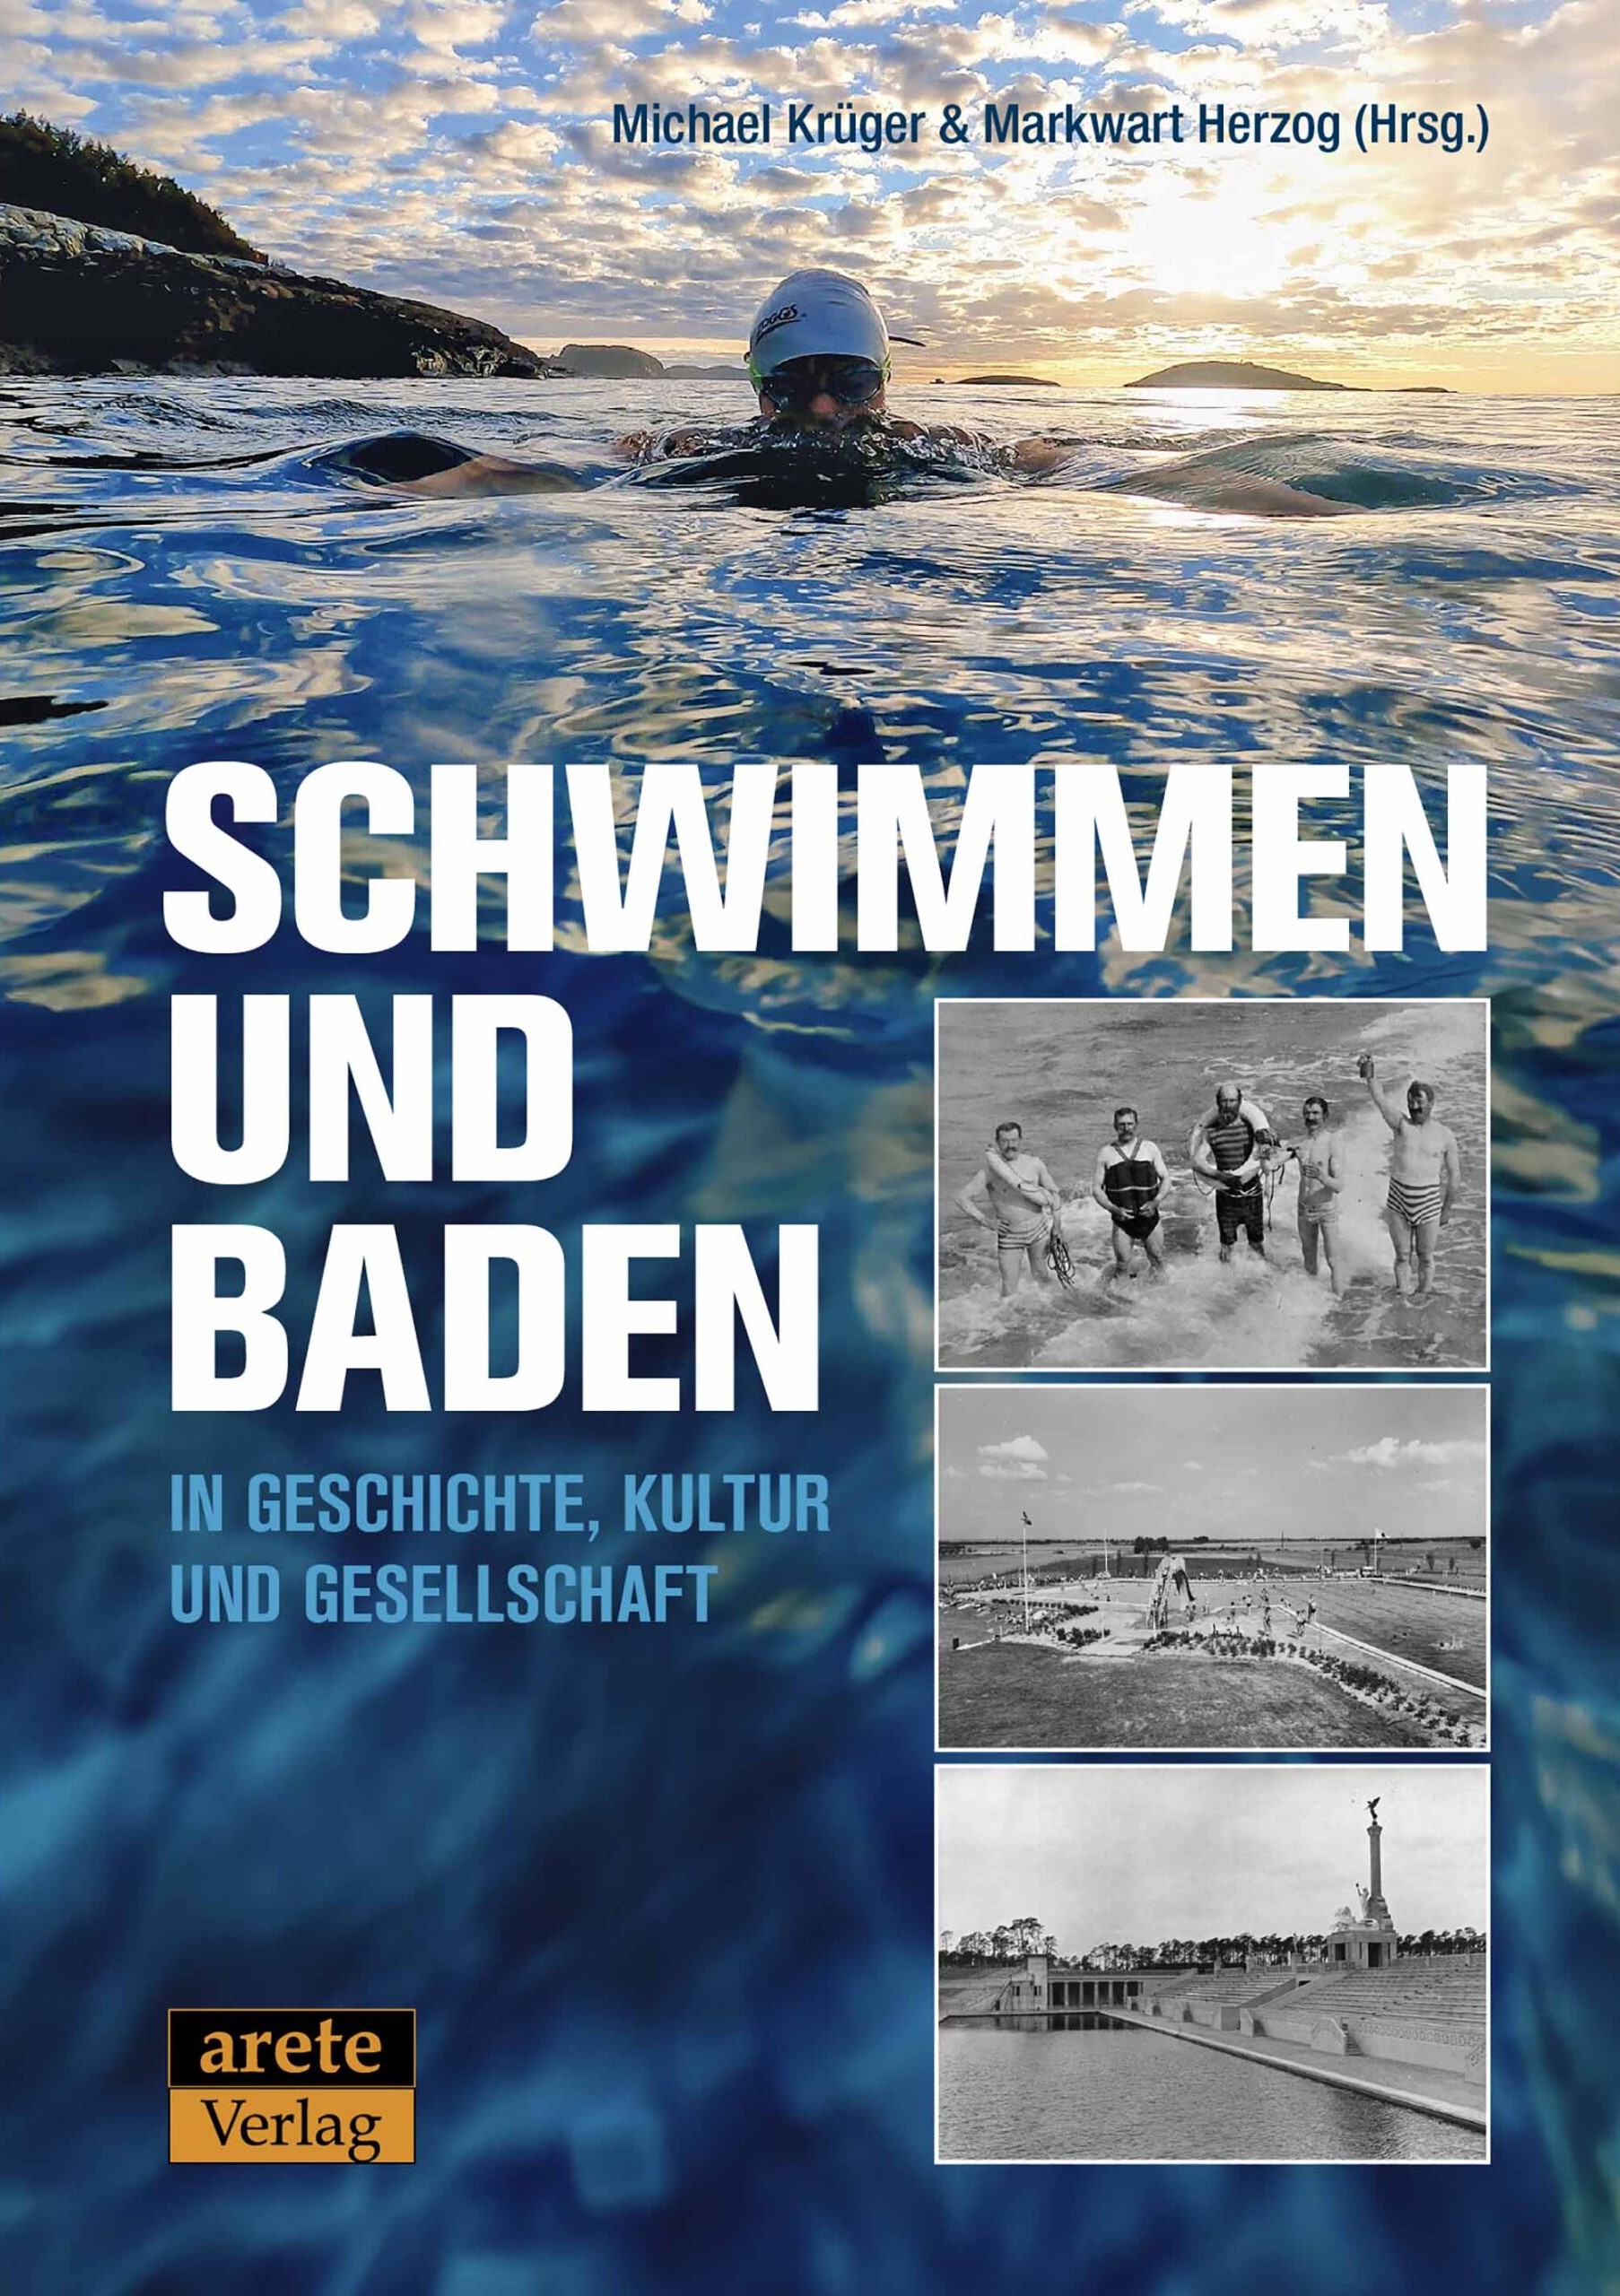 Schwabenakademie Irsee: Schwimmen und Baden in Geschichte, Kultur und Gesellschaft